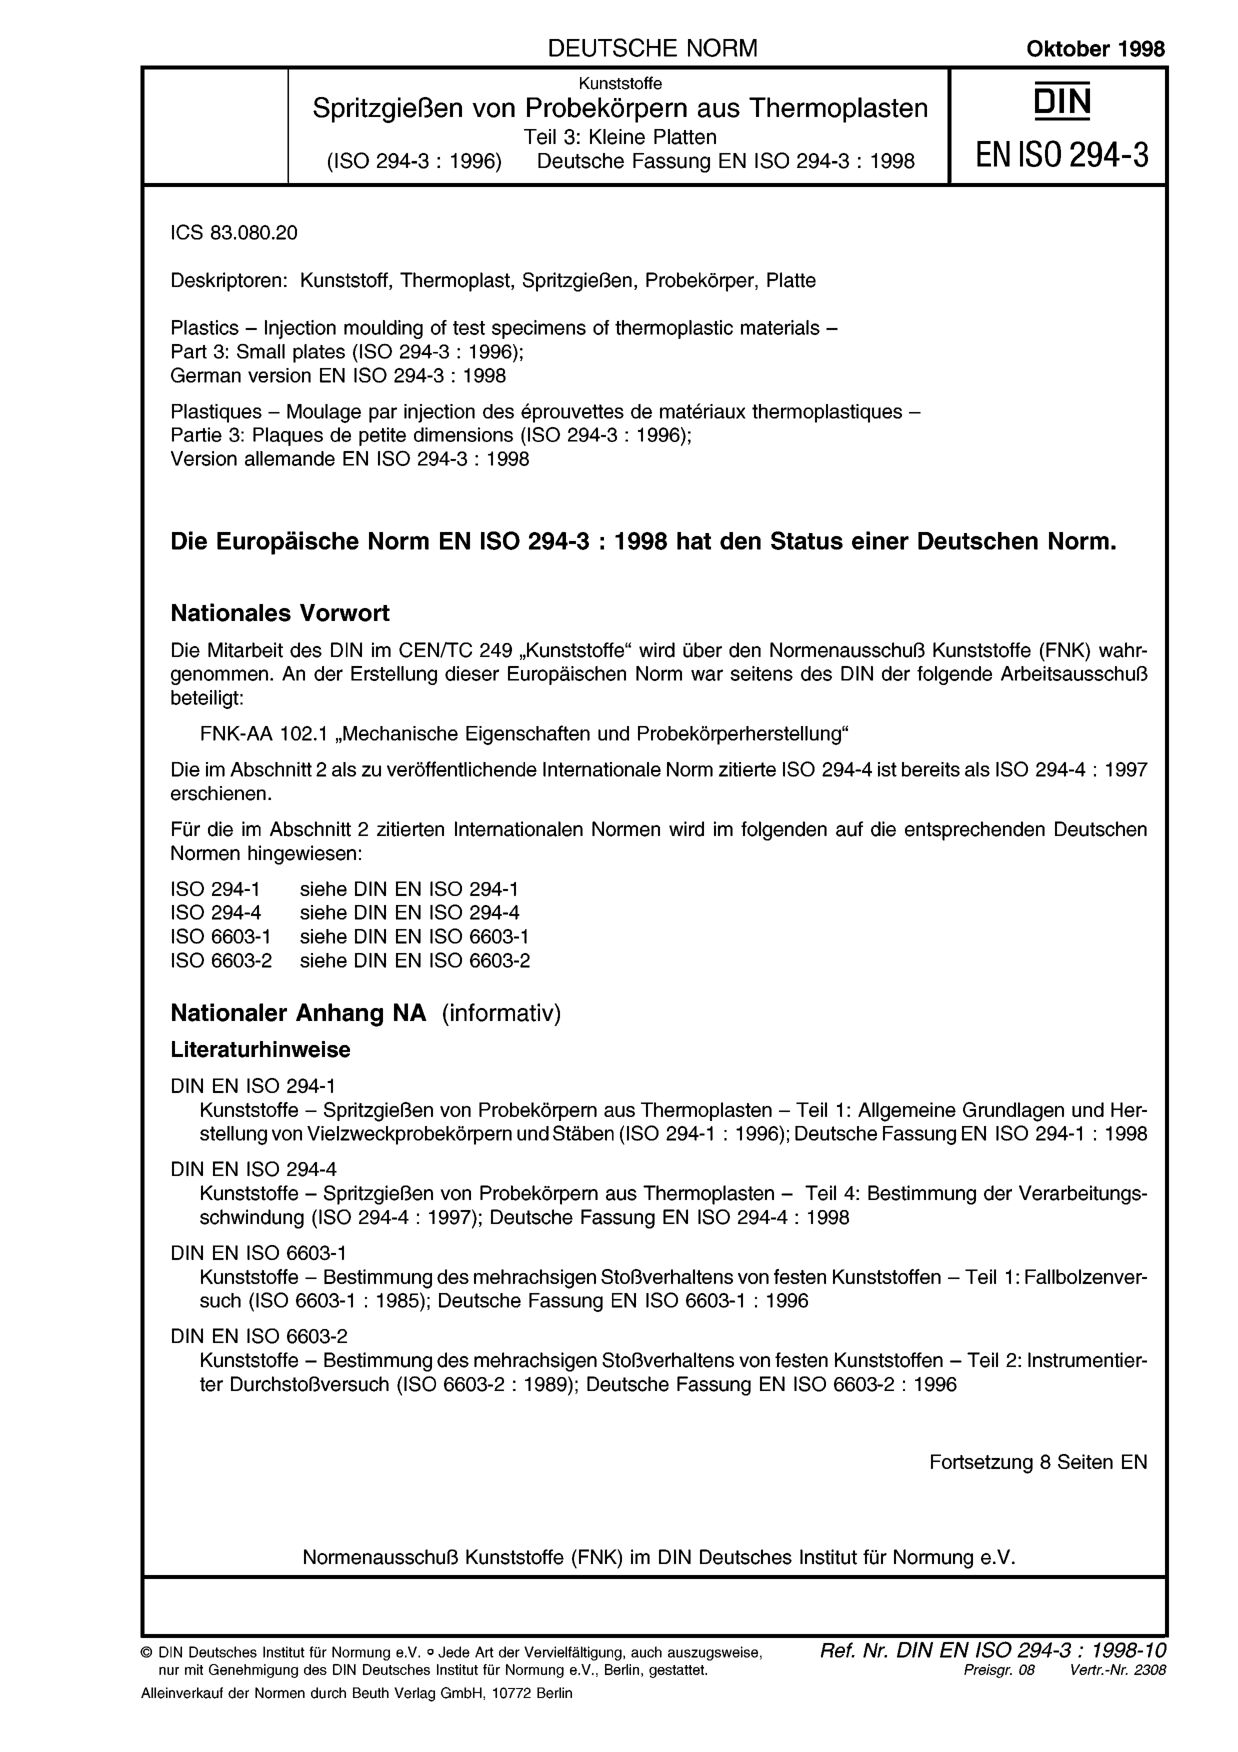 DIN EN ISO 294-3:1998封面图